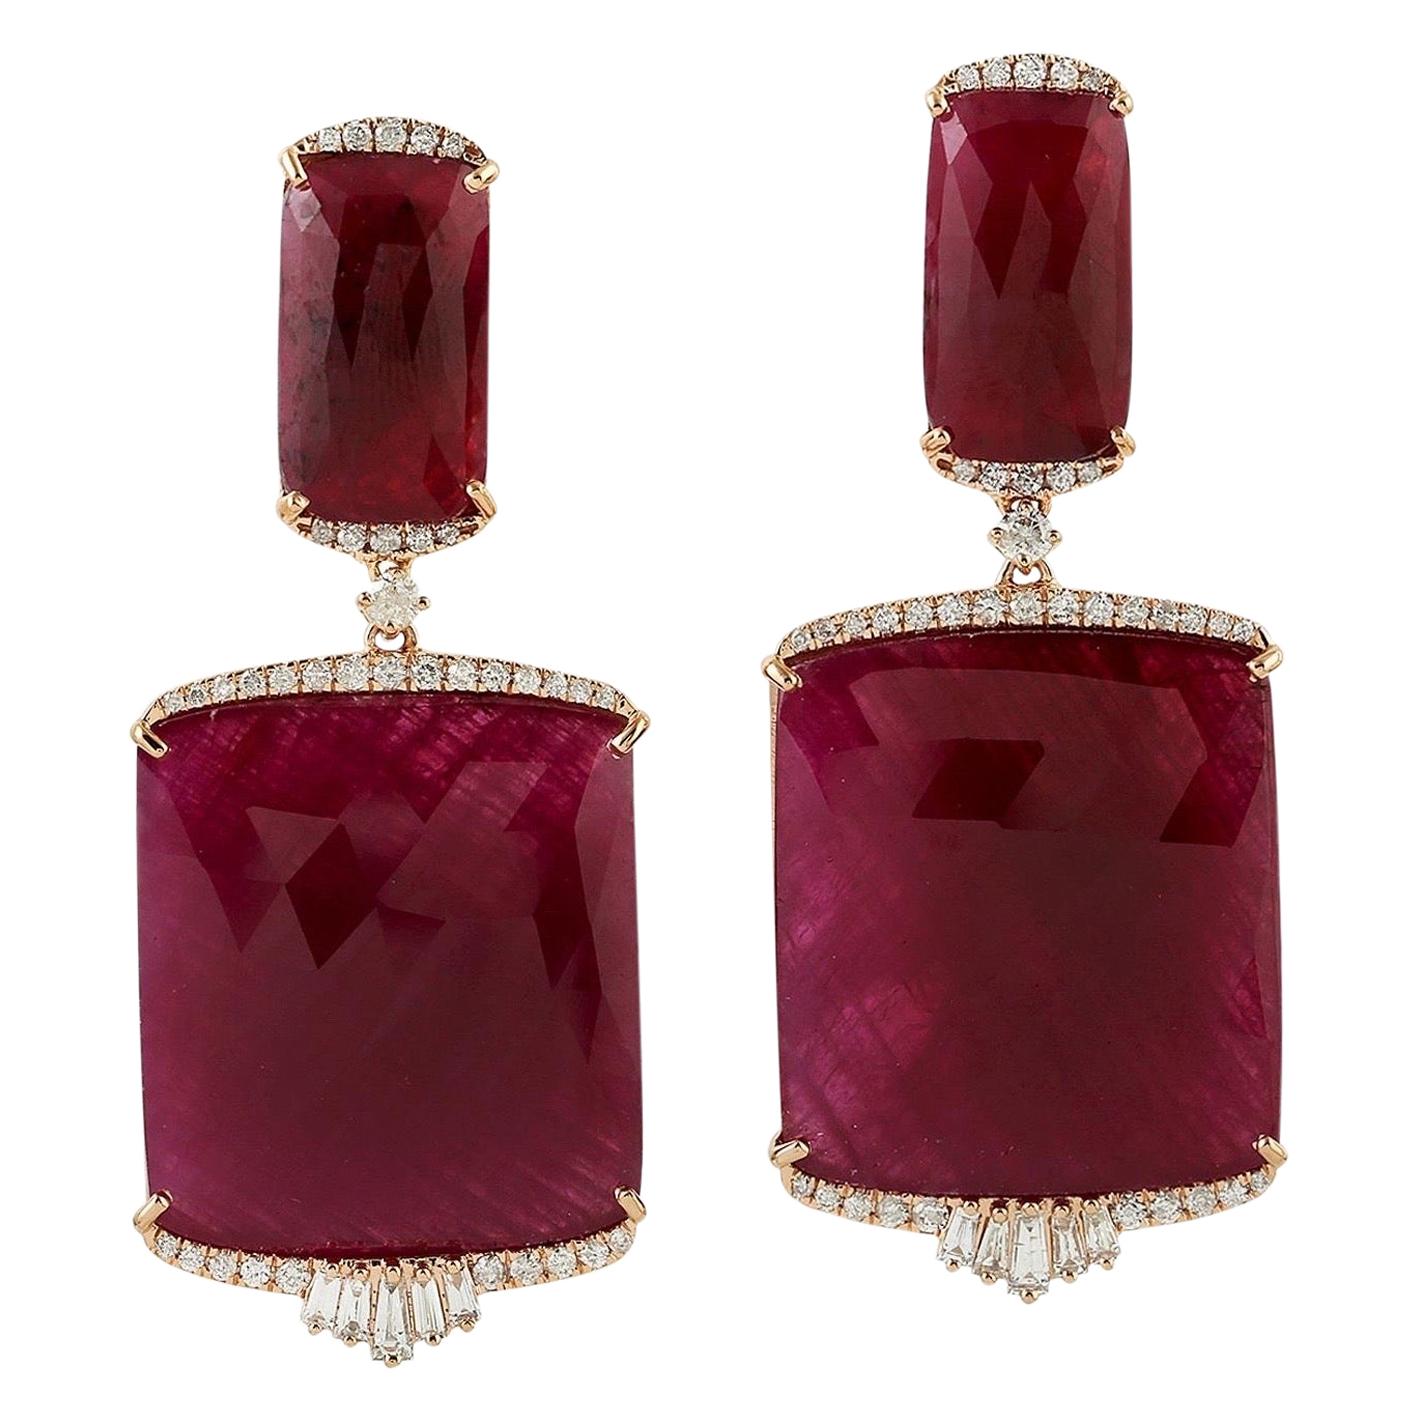 85.52 Carat Ruby Diamond 18 Karat Gold Earrings